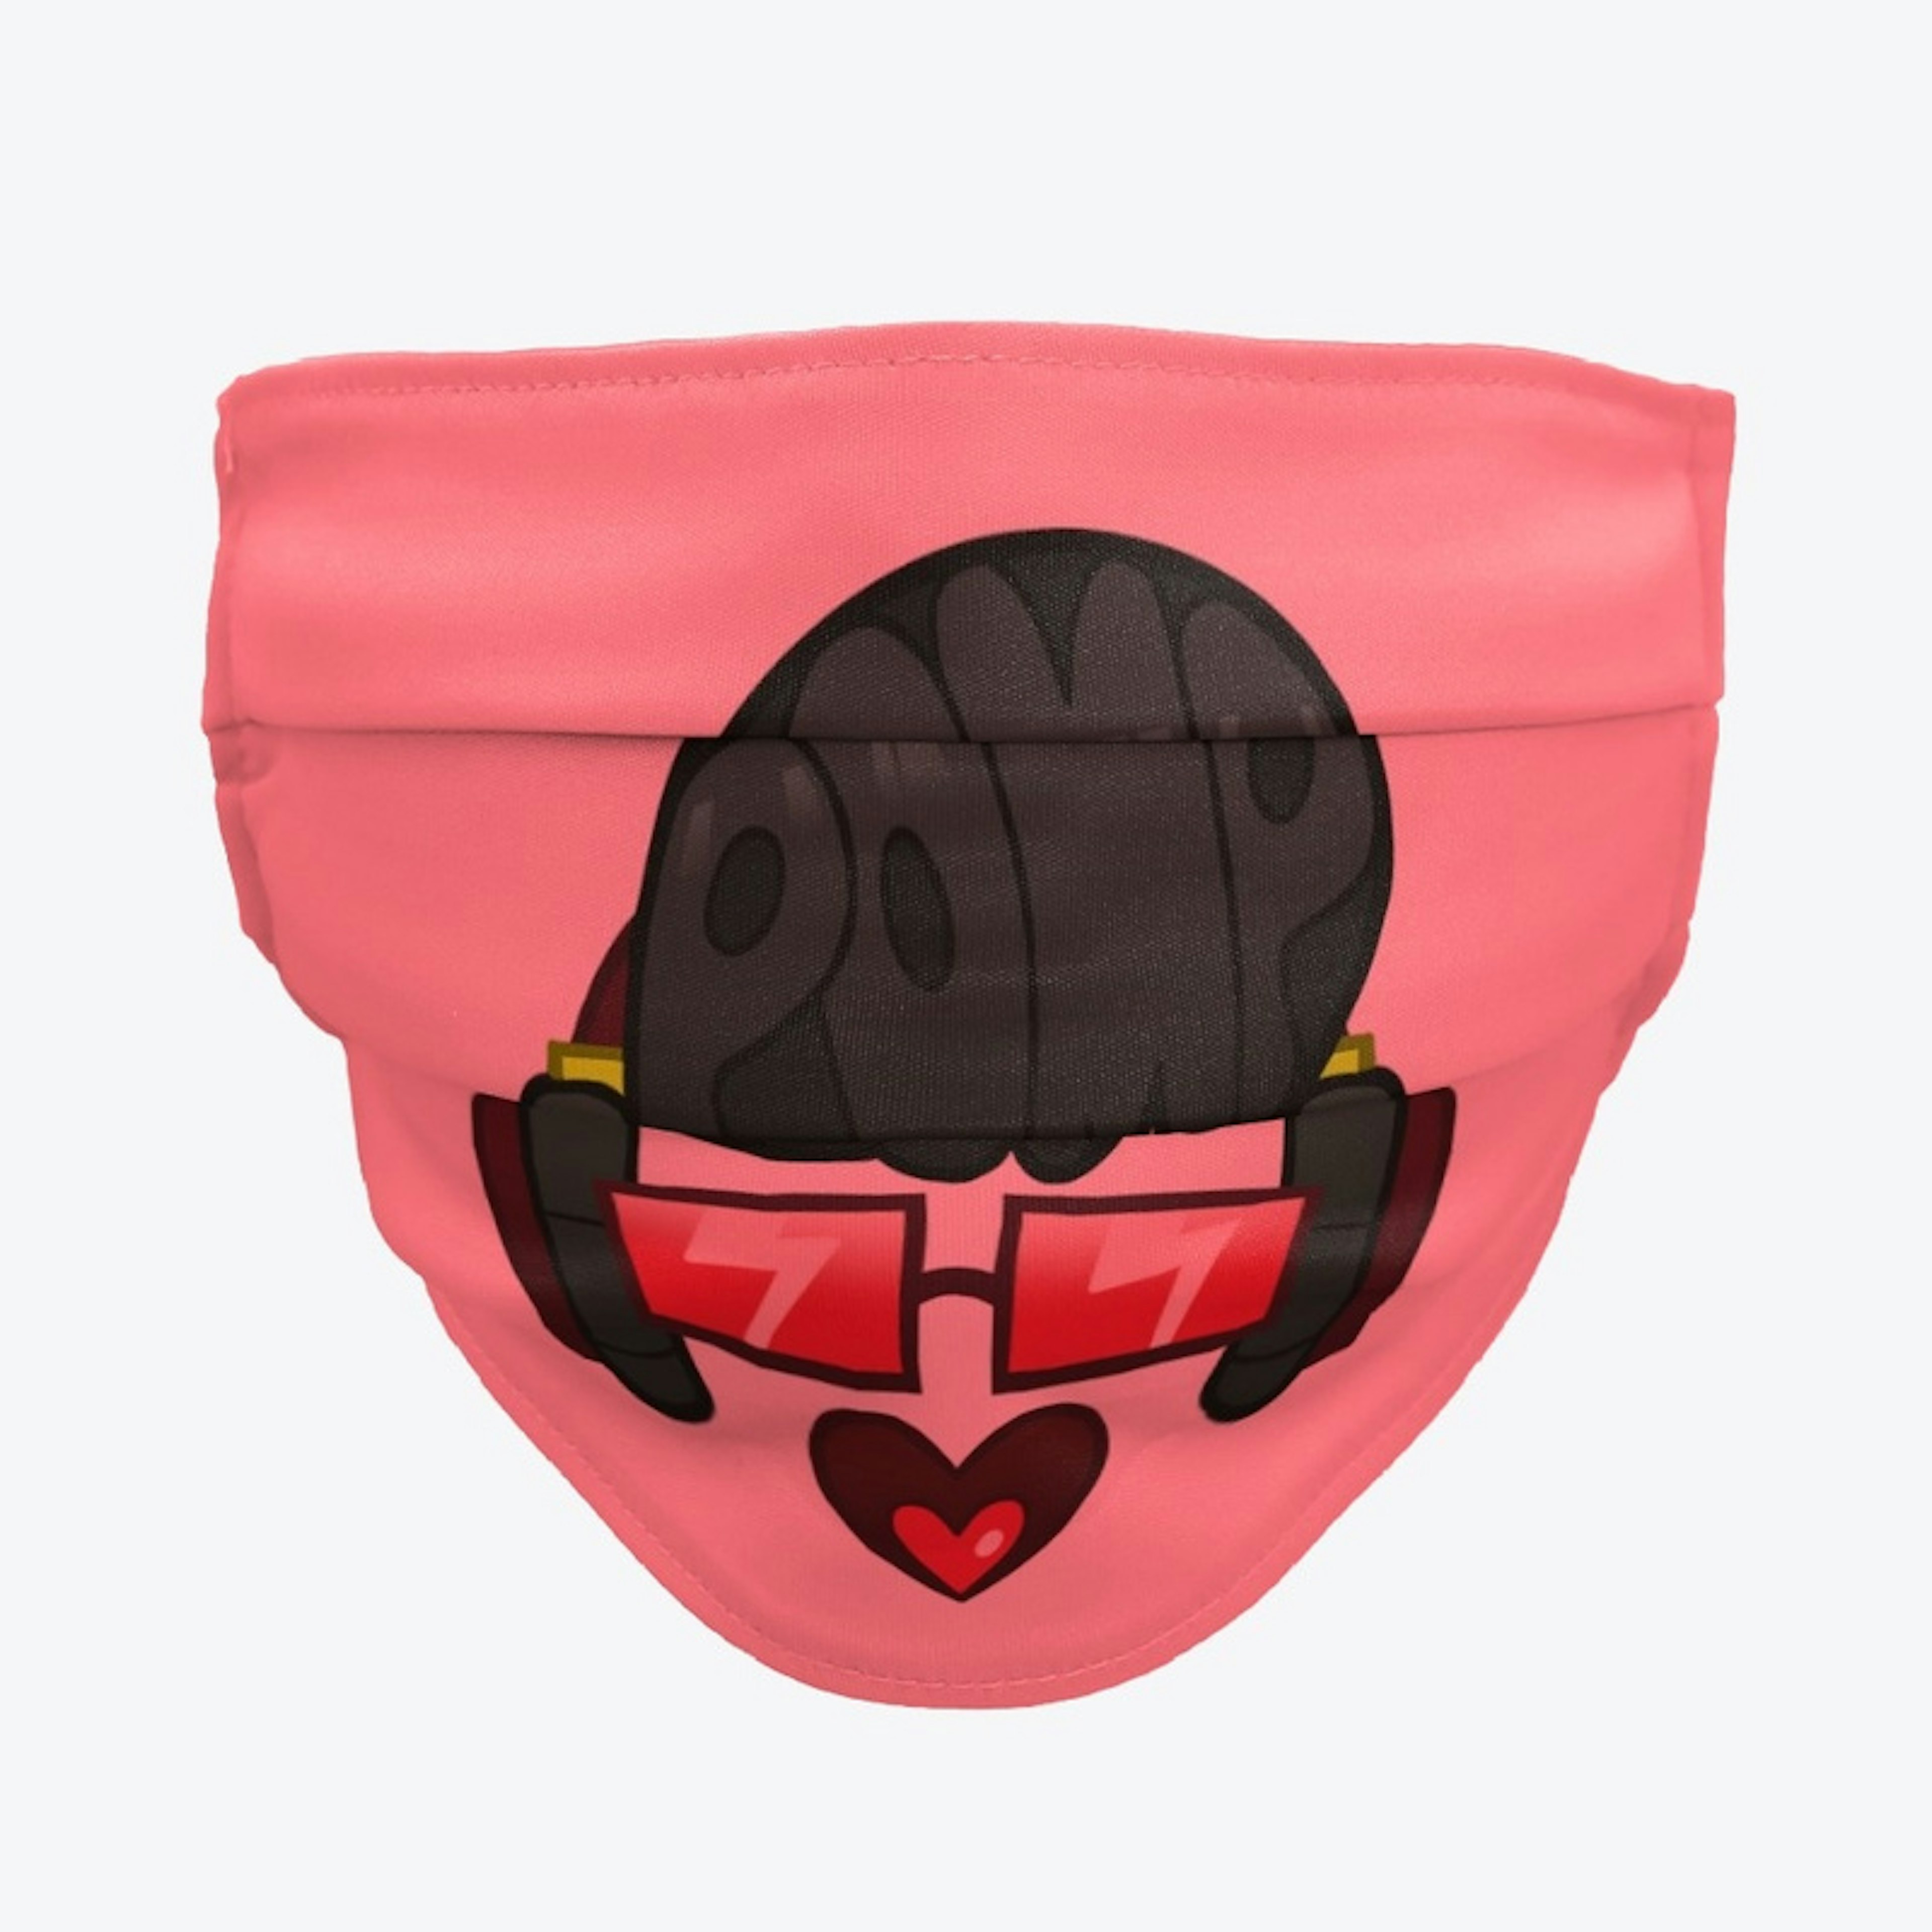 Pomp Face Mask! FOR SAFETY!